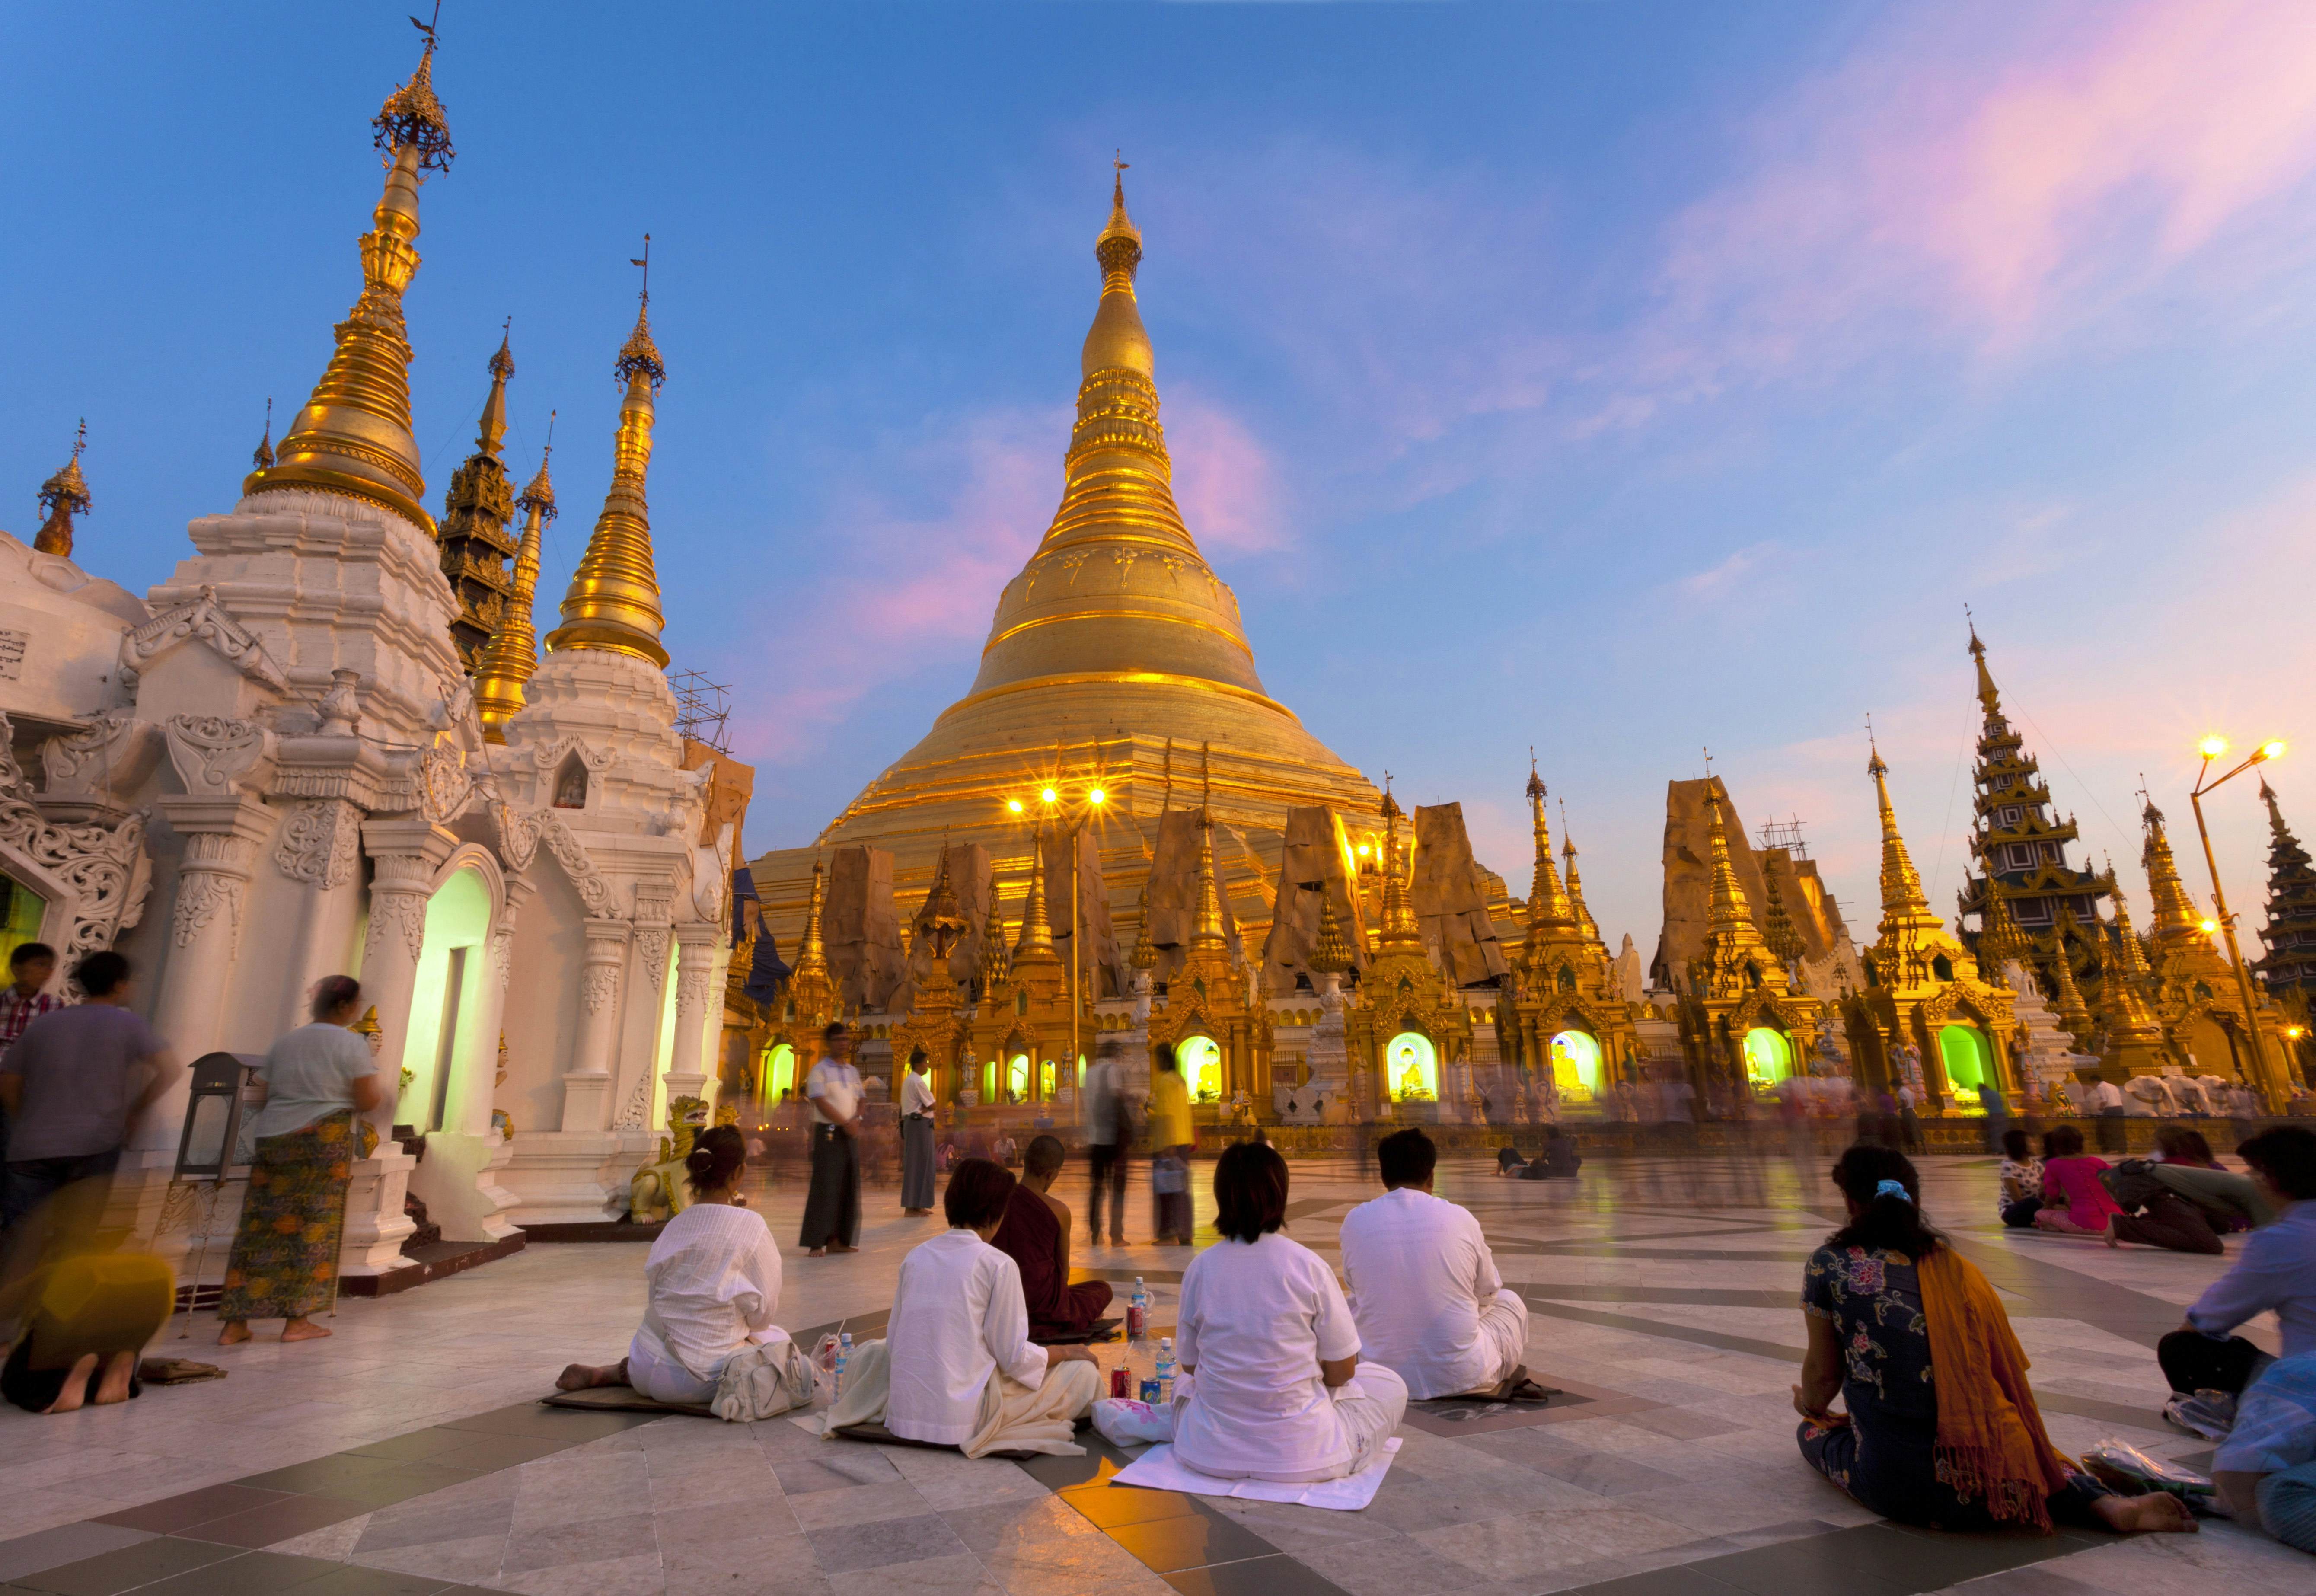 Янгон мьянма. Мьянма столица Янгон. Шведагон Пайя, Мьянма. Пагода Шведагон, Янгон, Мьянма. Нейпьидо столица Мьянмы.